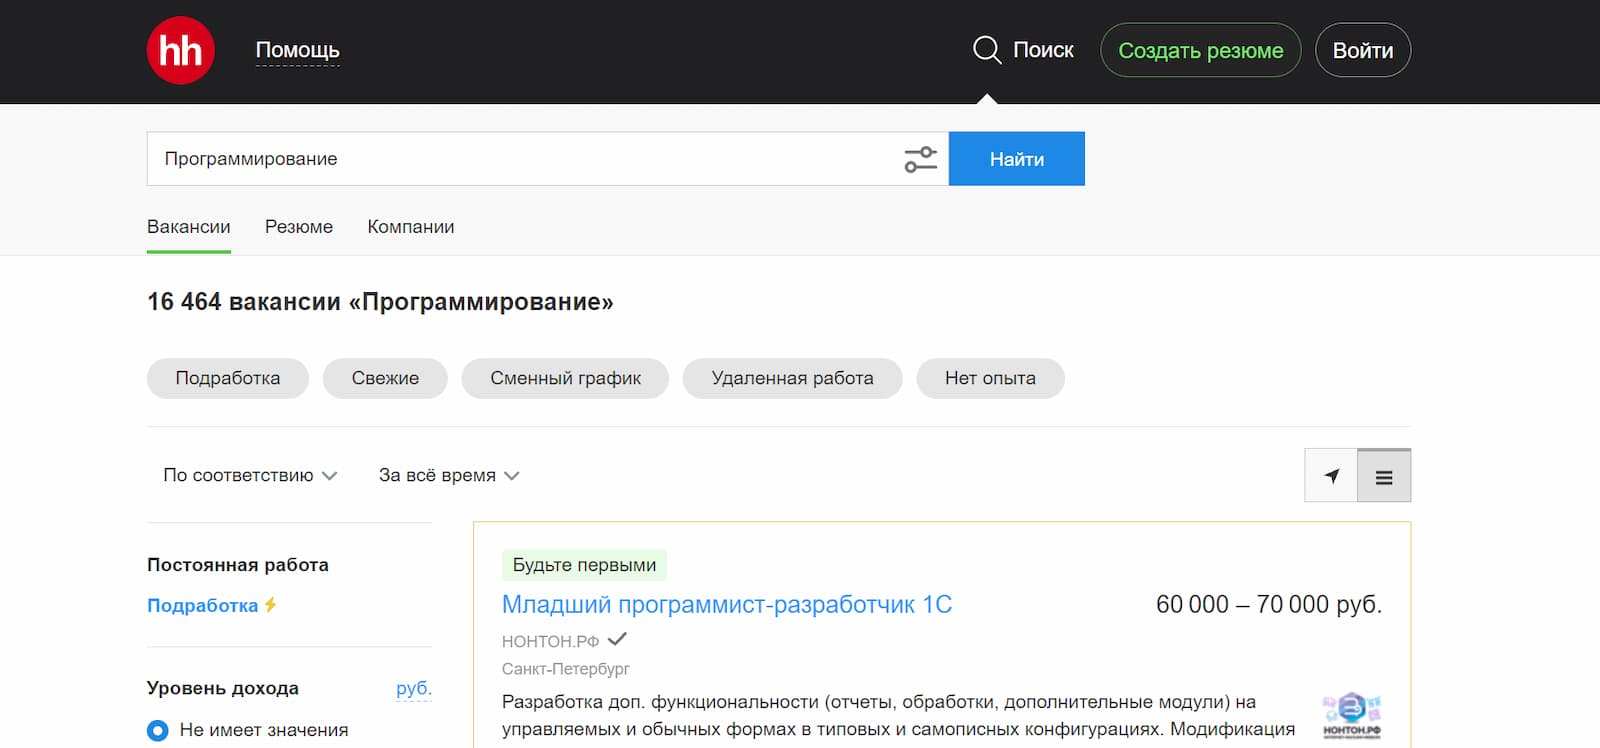 Более 16 000 — такое количество вакансий в программировании размещено на сайте hh.ru